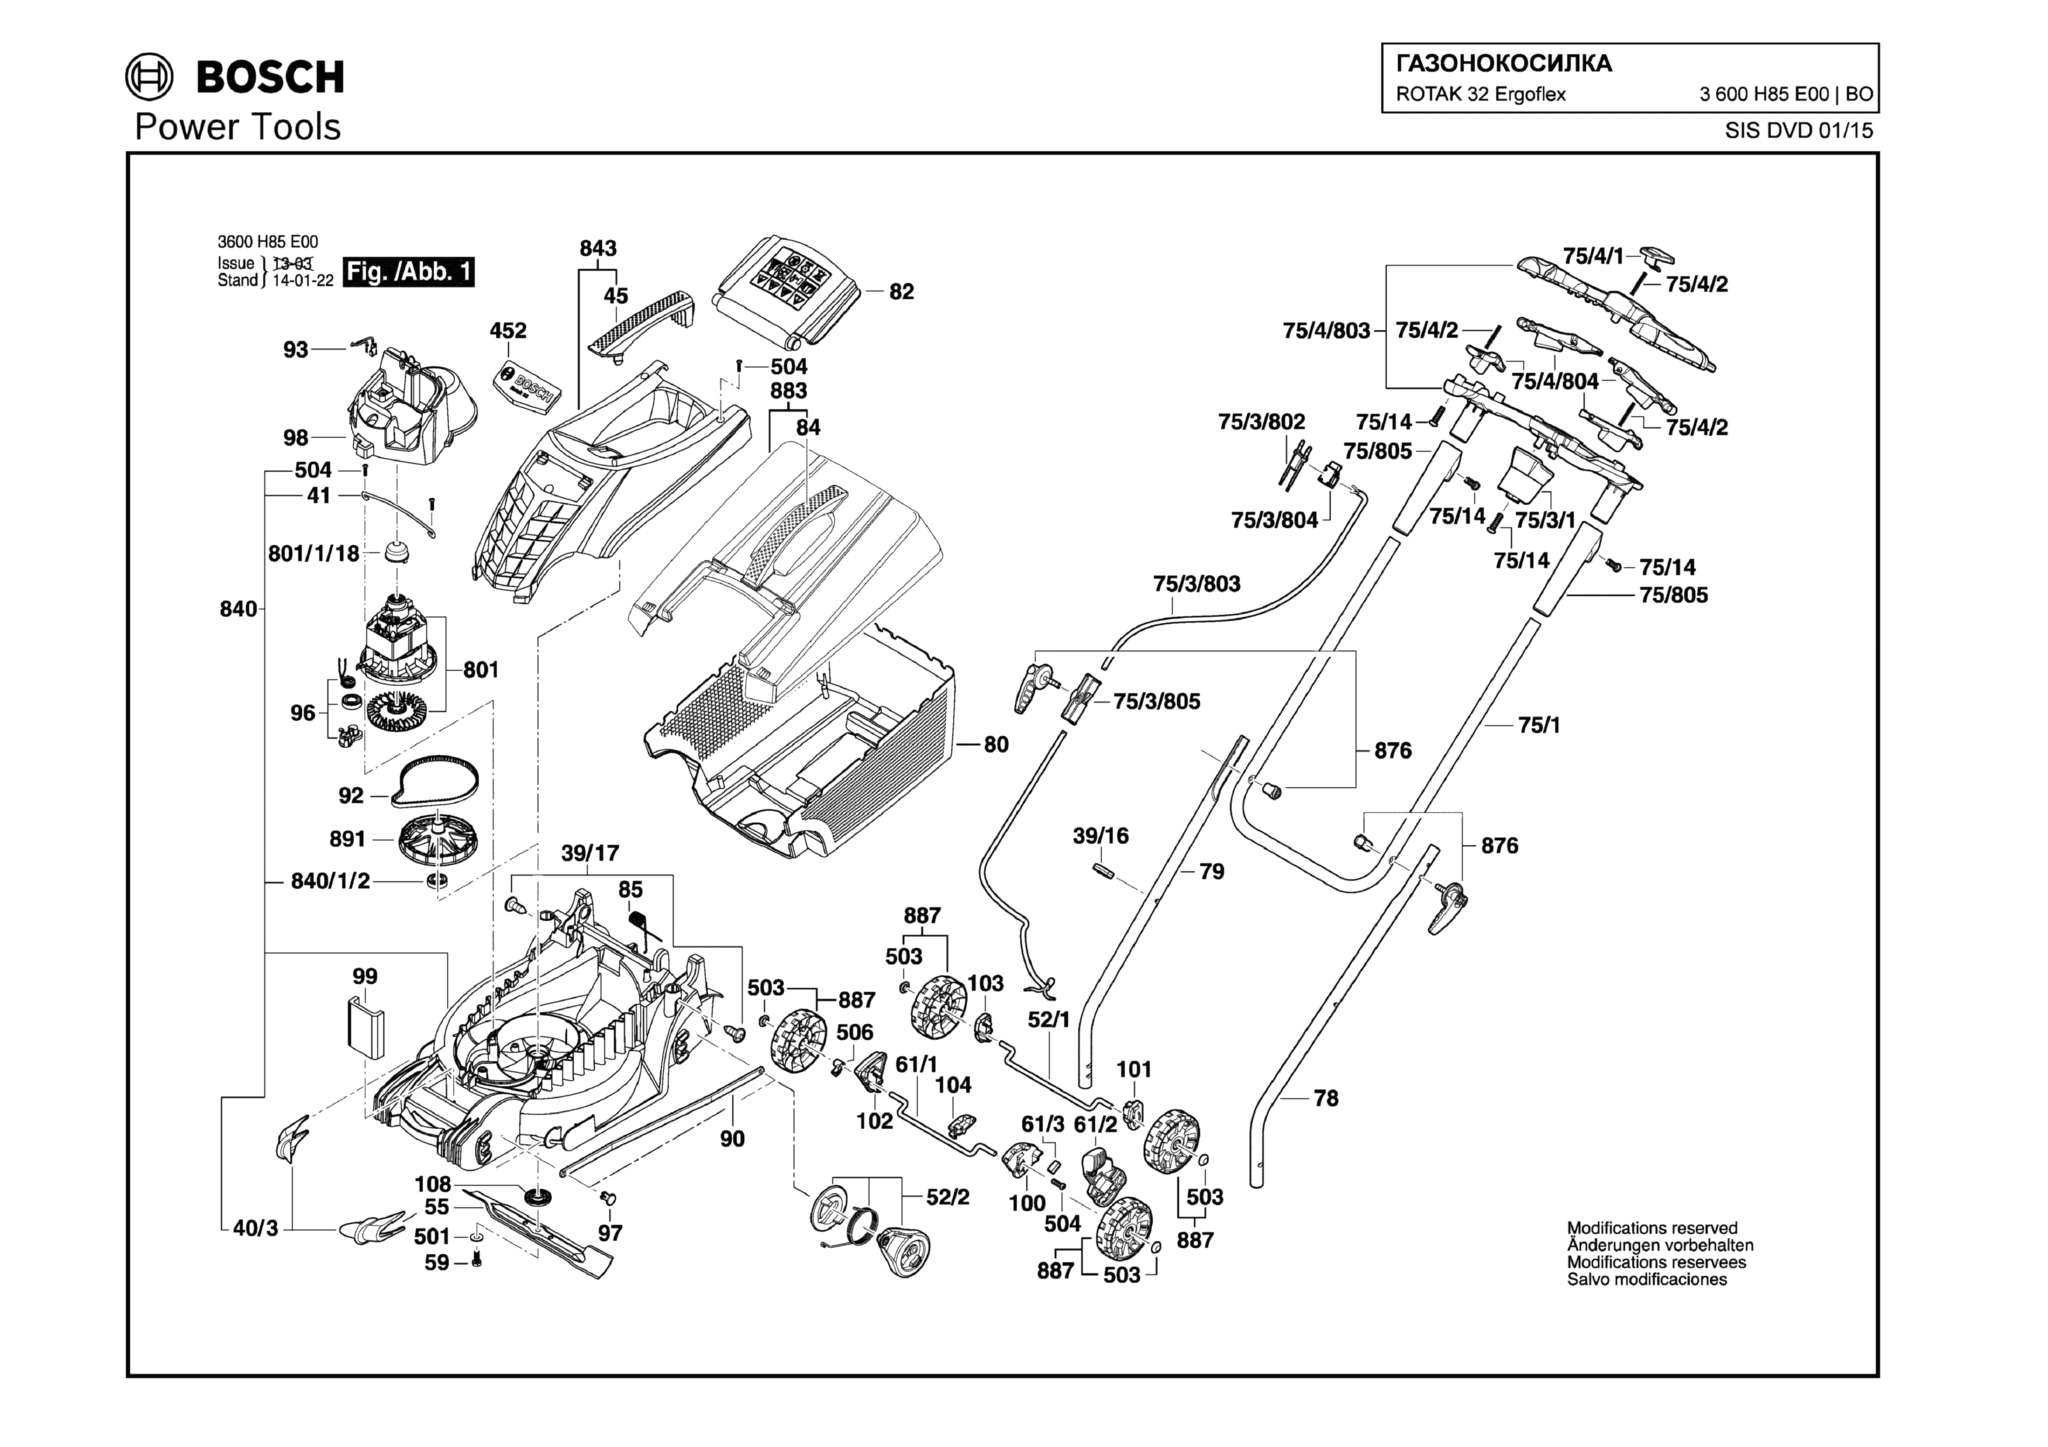 Запчасти, схема и деталировка Bosch ROTAK 32 ERGOFLEX (ТИП 3600H85E00)